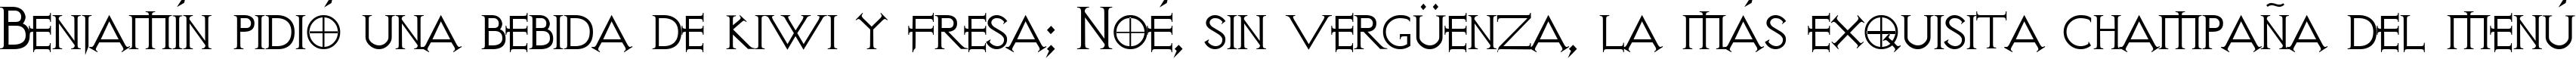 Пример написания шрифтом Visitation Regular текста на испанском